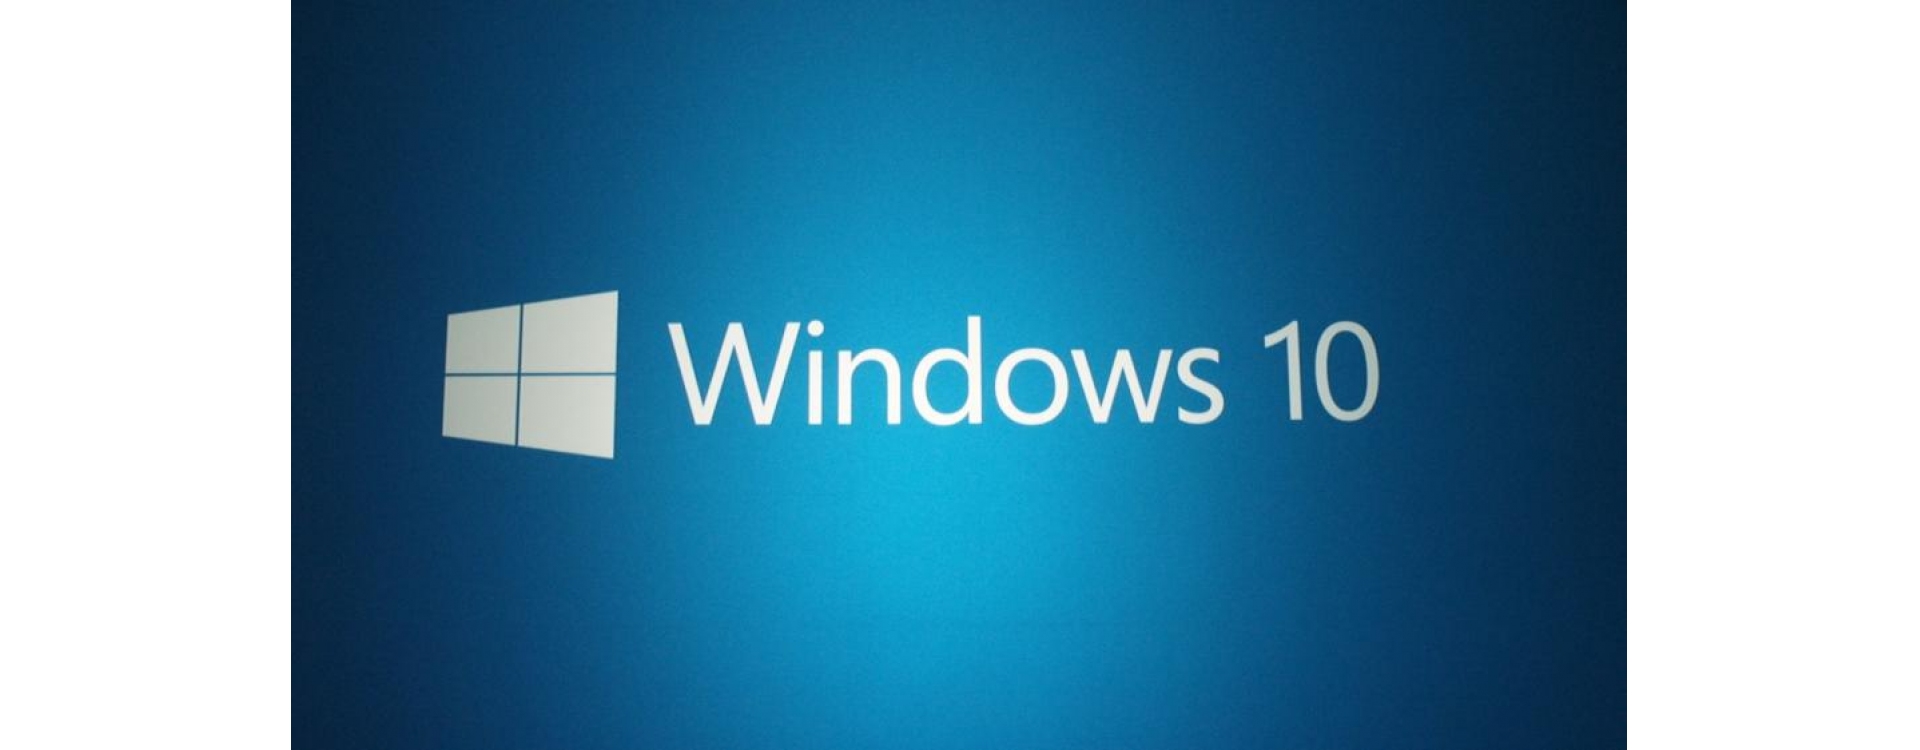 Deve terminar esta semana a versão final do Windows 10 